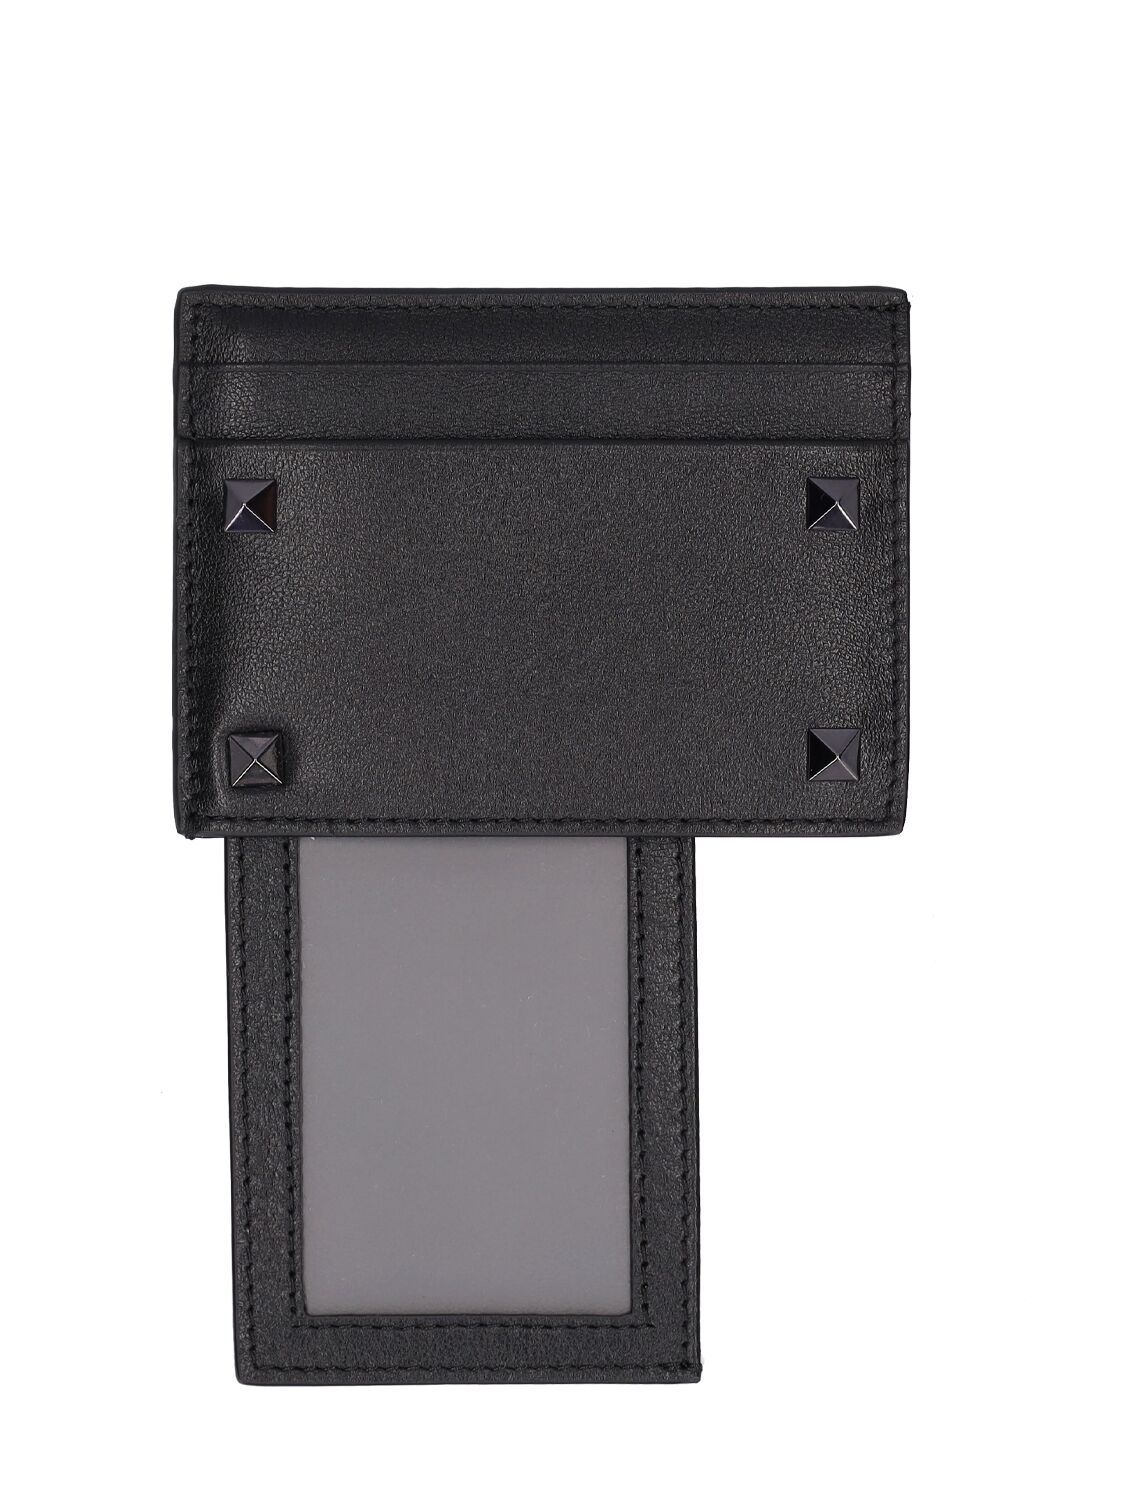 Shop Valentino Rockstud Leather Card Holder In Black